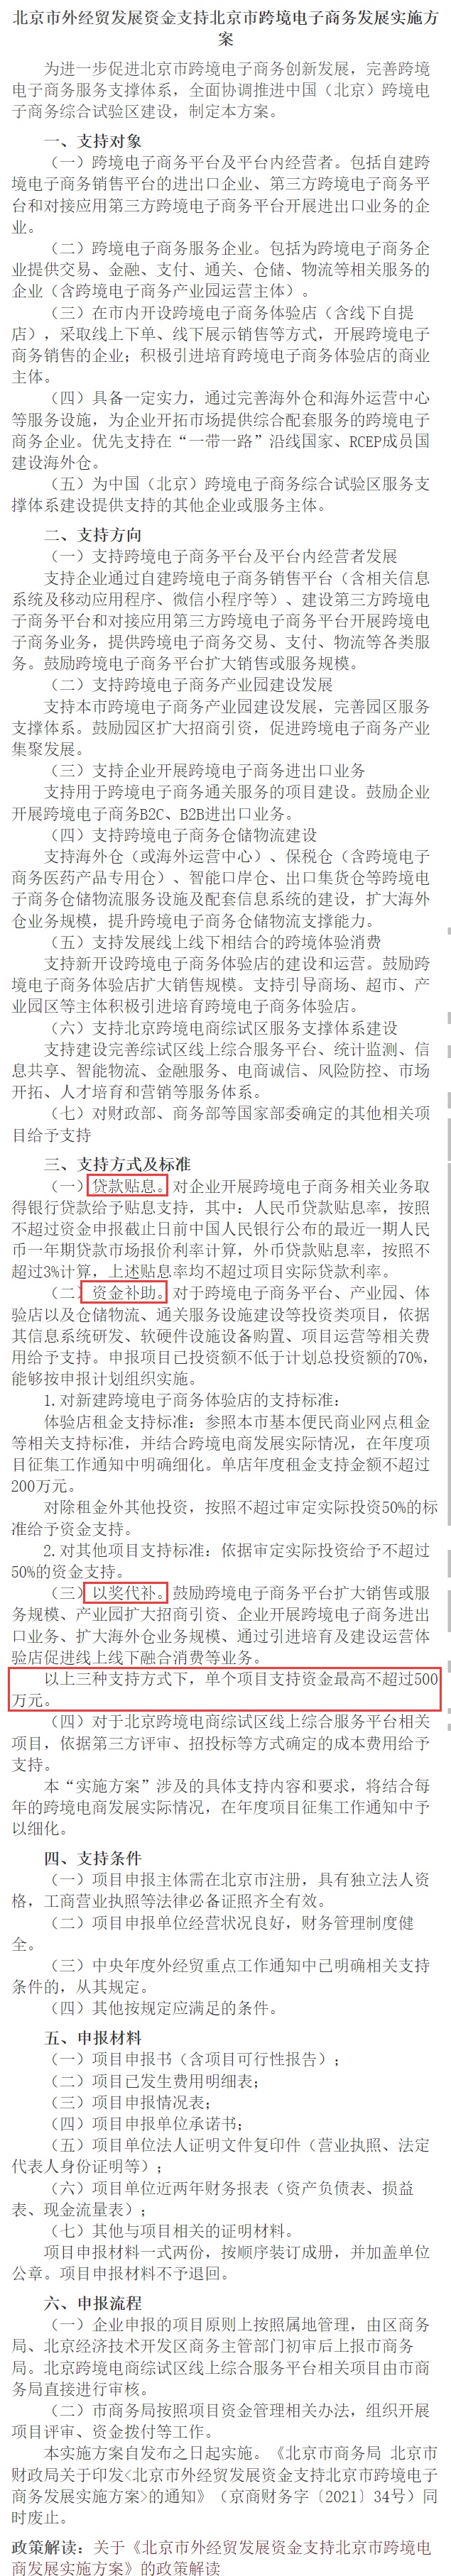 北京市商务局:支持跨境电商单个项目资金不超过500万